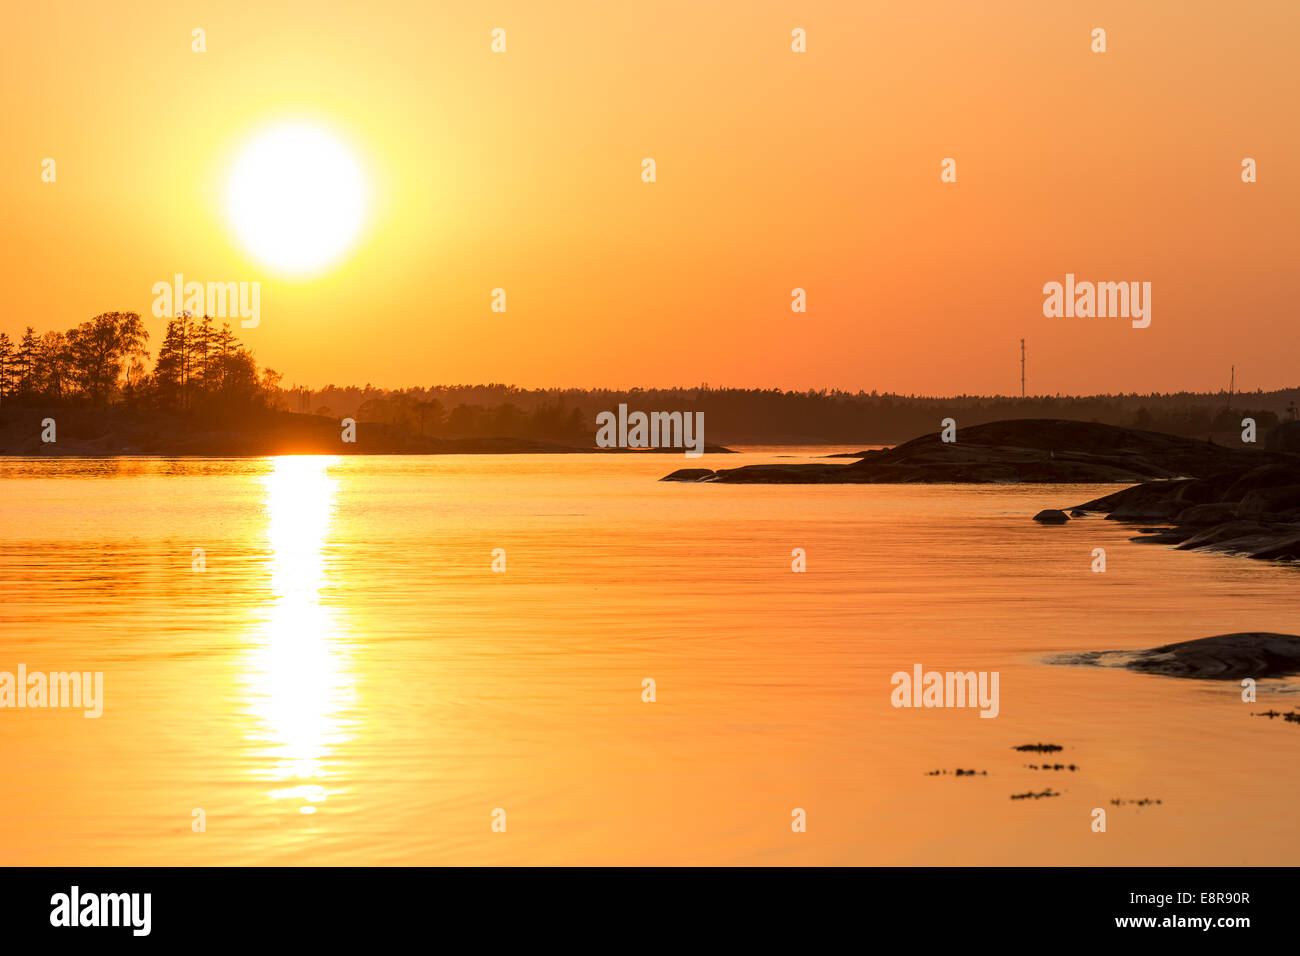 Sun setting at Järvo island, Kirkkonummi, Finland, Europe, EU Stock Photo